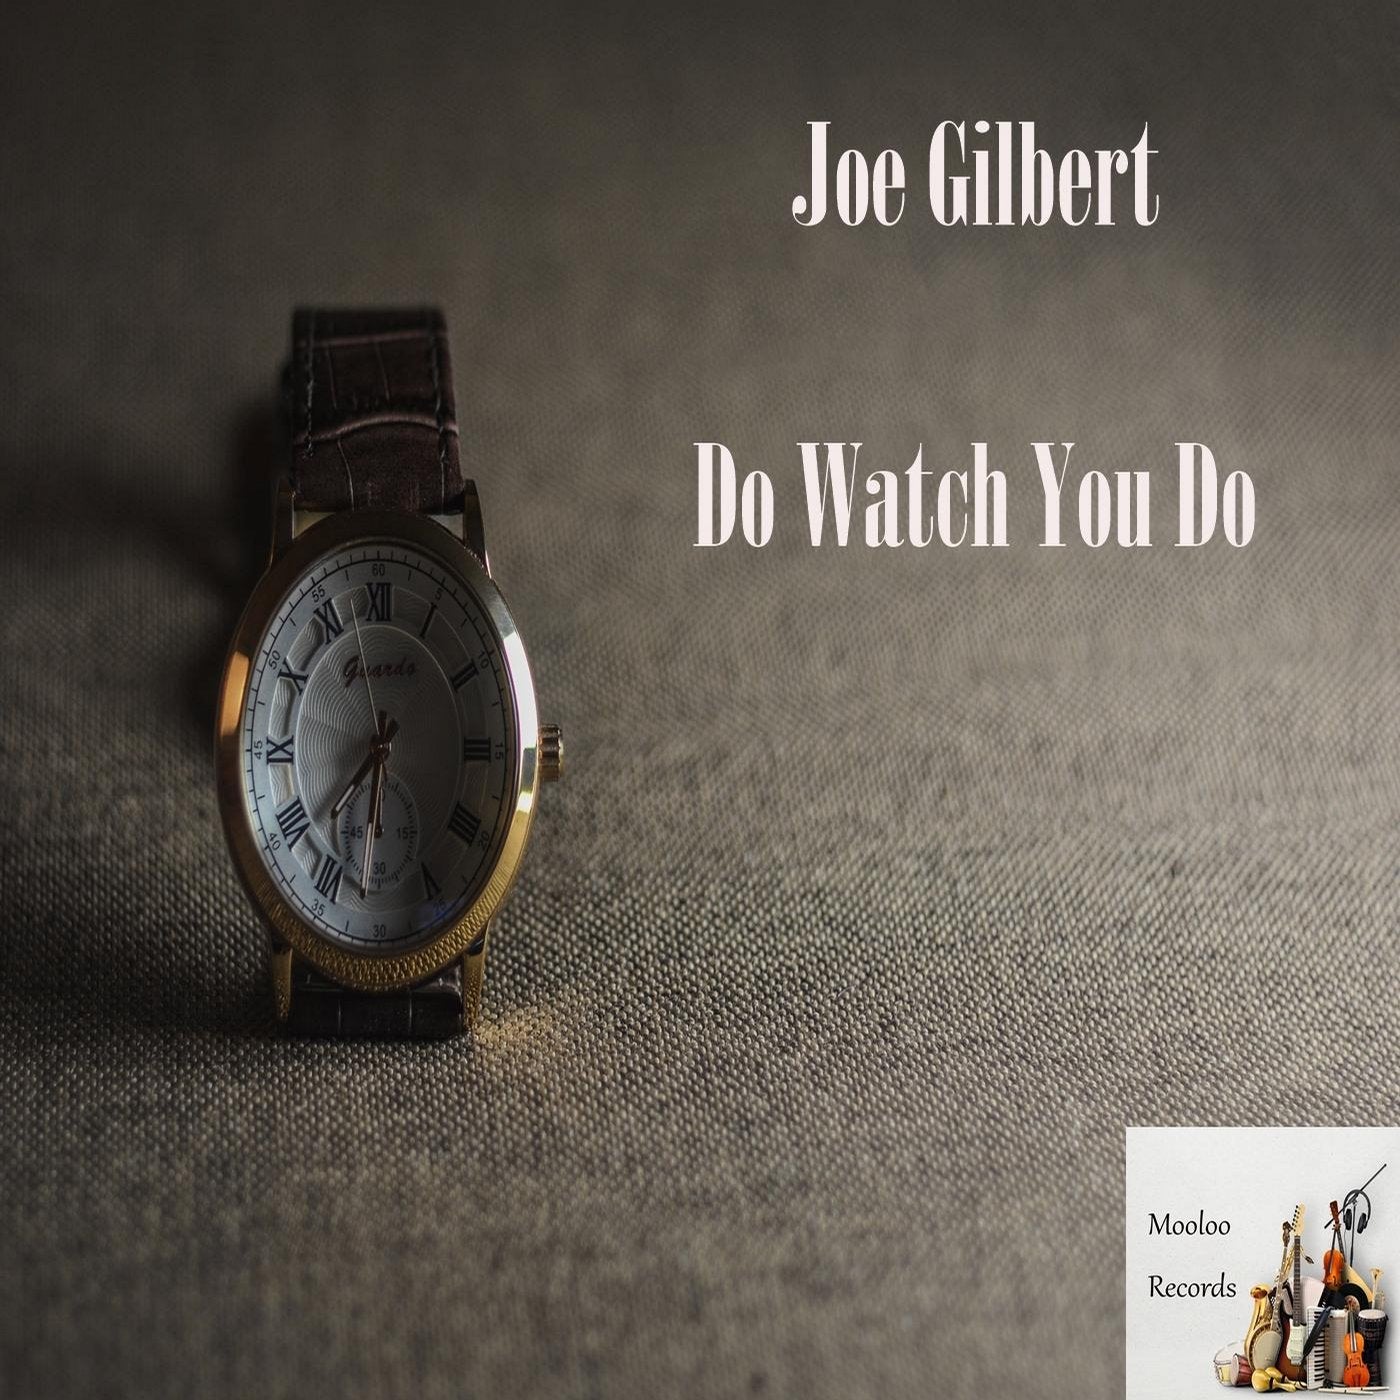 Do Watch You Do